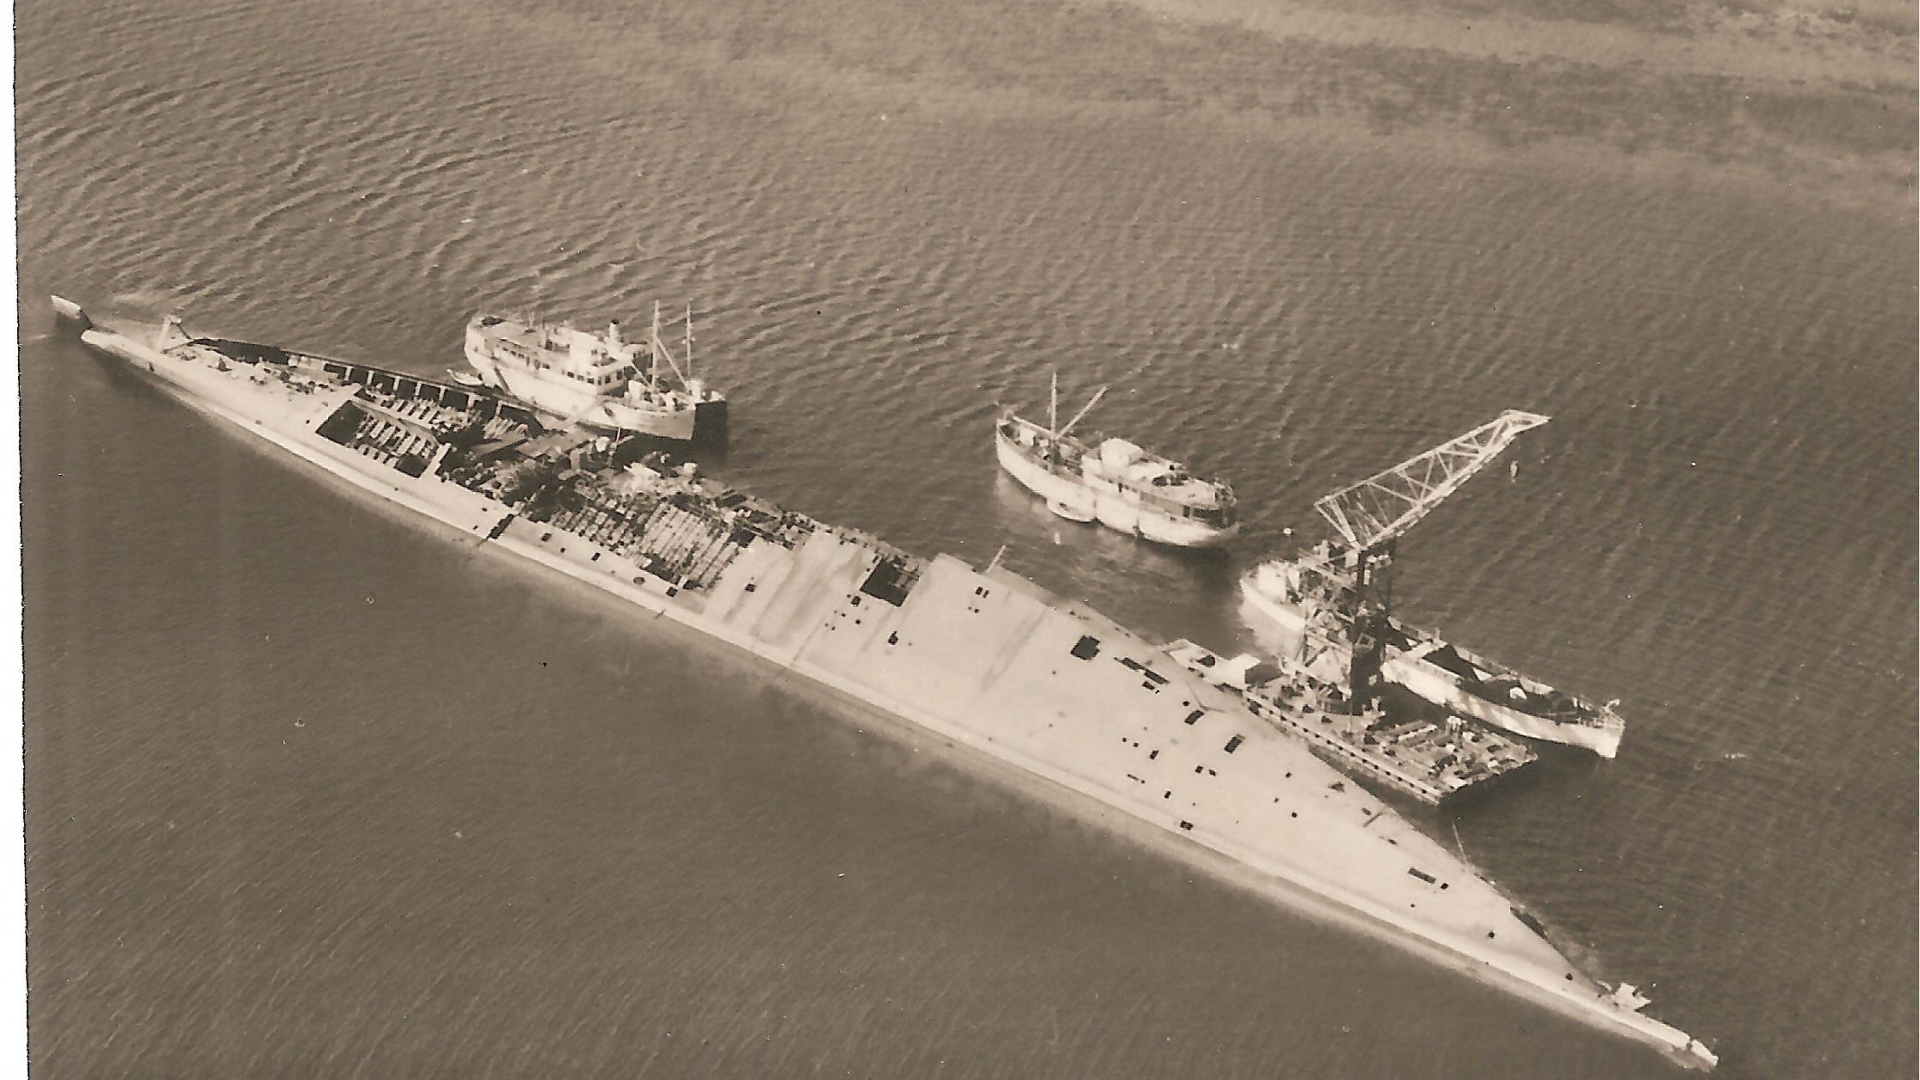 Tirpitz sunk outside of Håkøya during world war II